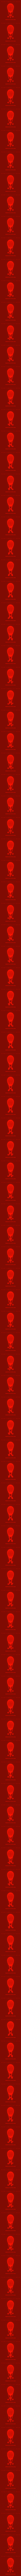 Fabergé Egg: Vector (Laser)